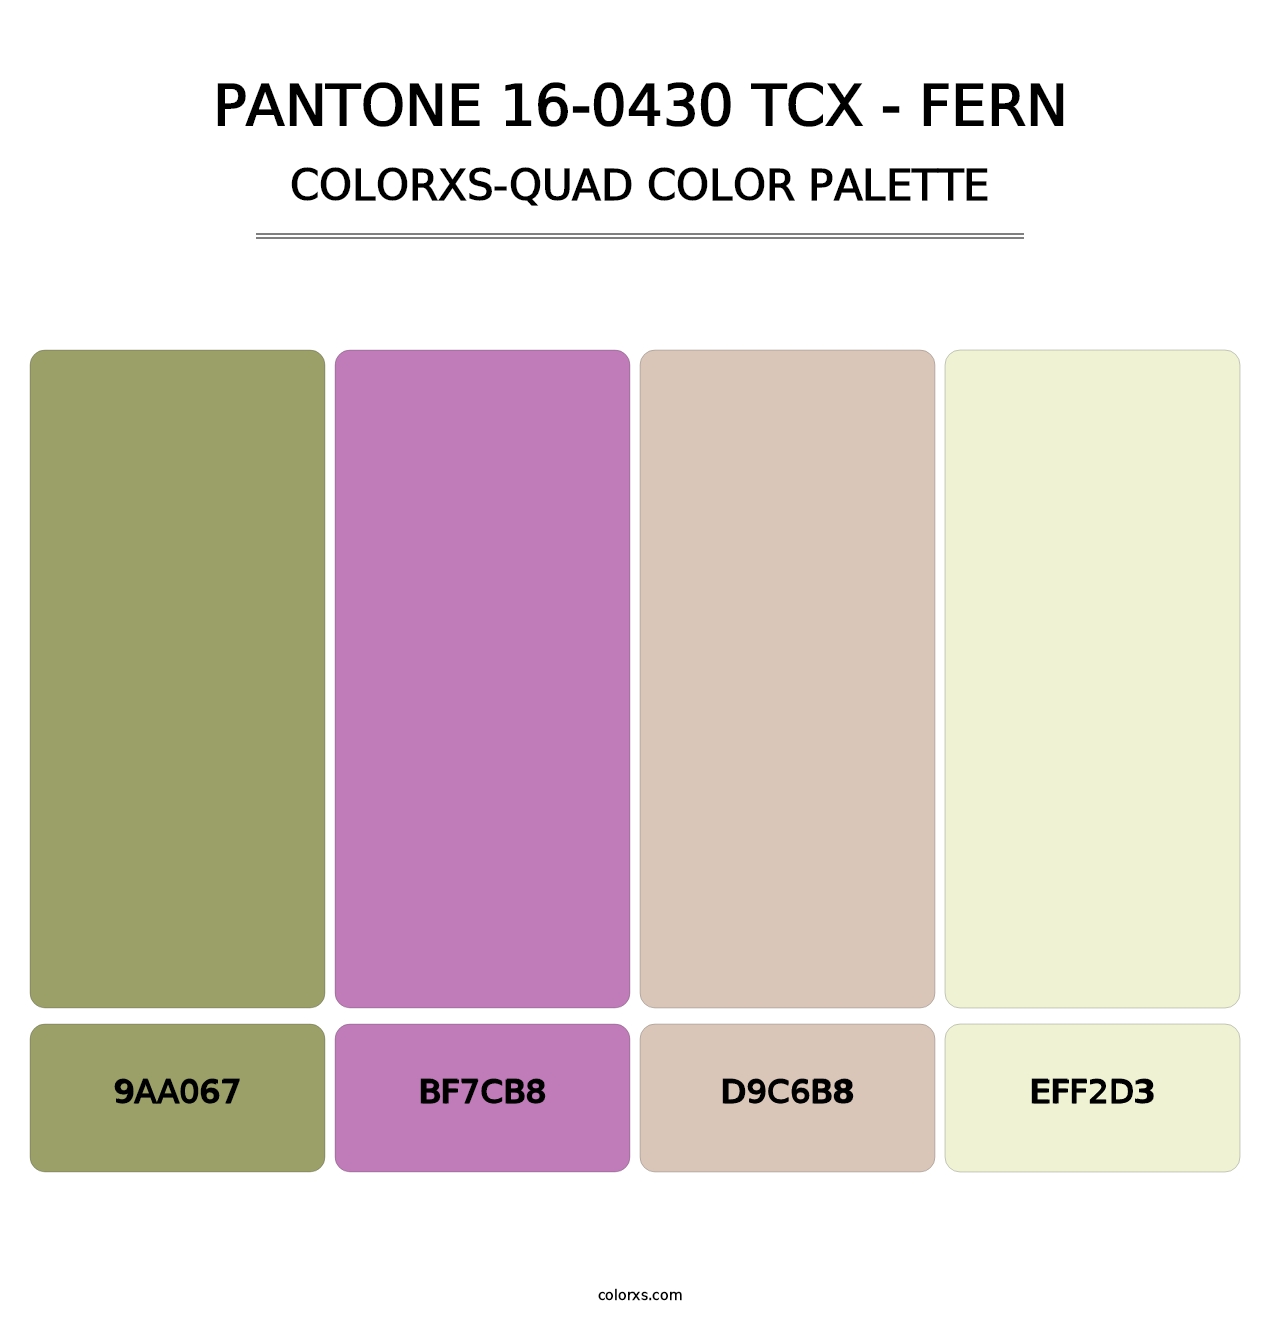 PANTONE 16-0430 TCX - Fern - Colorxs Quad Palette